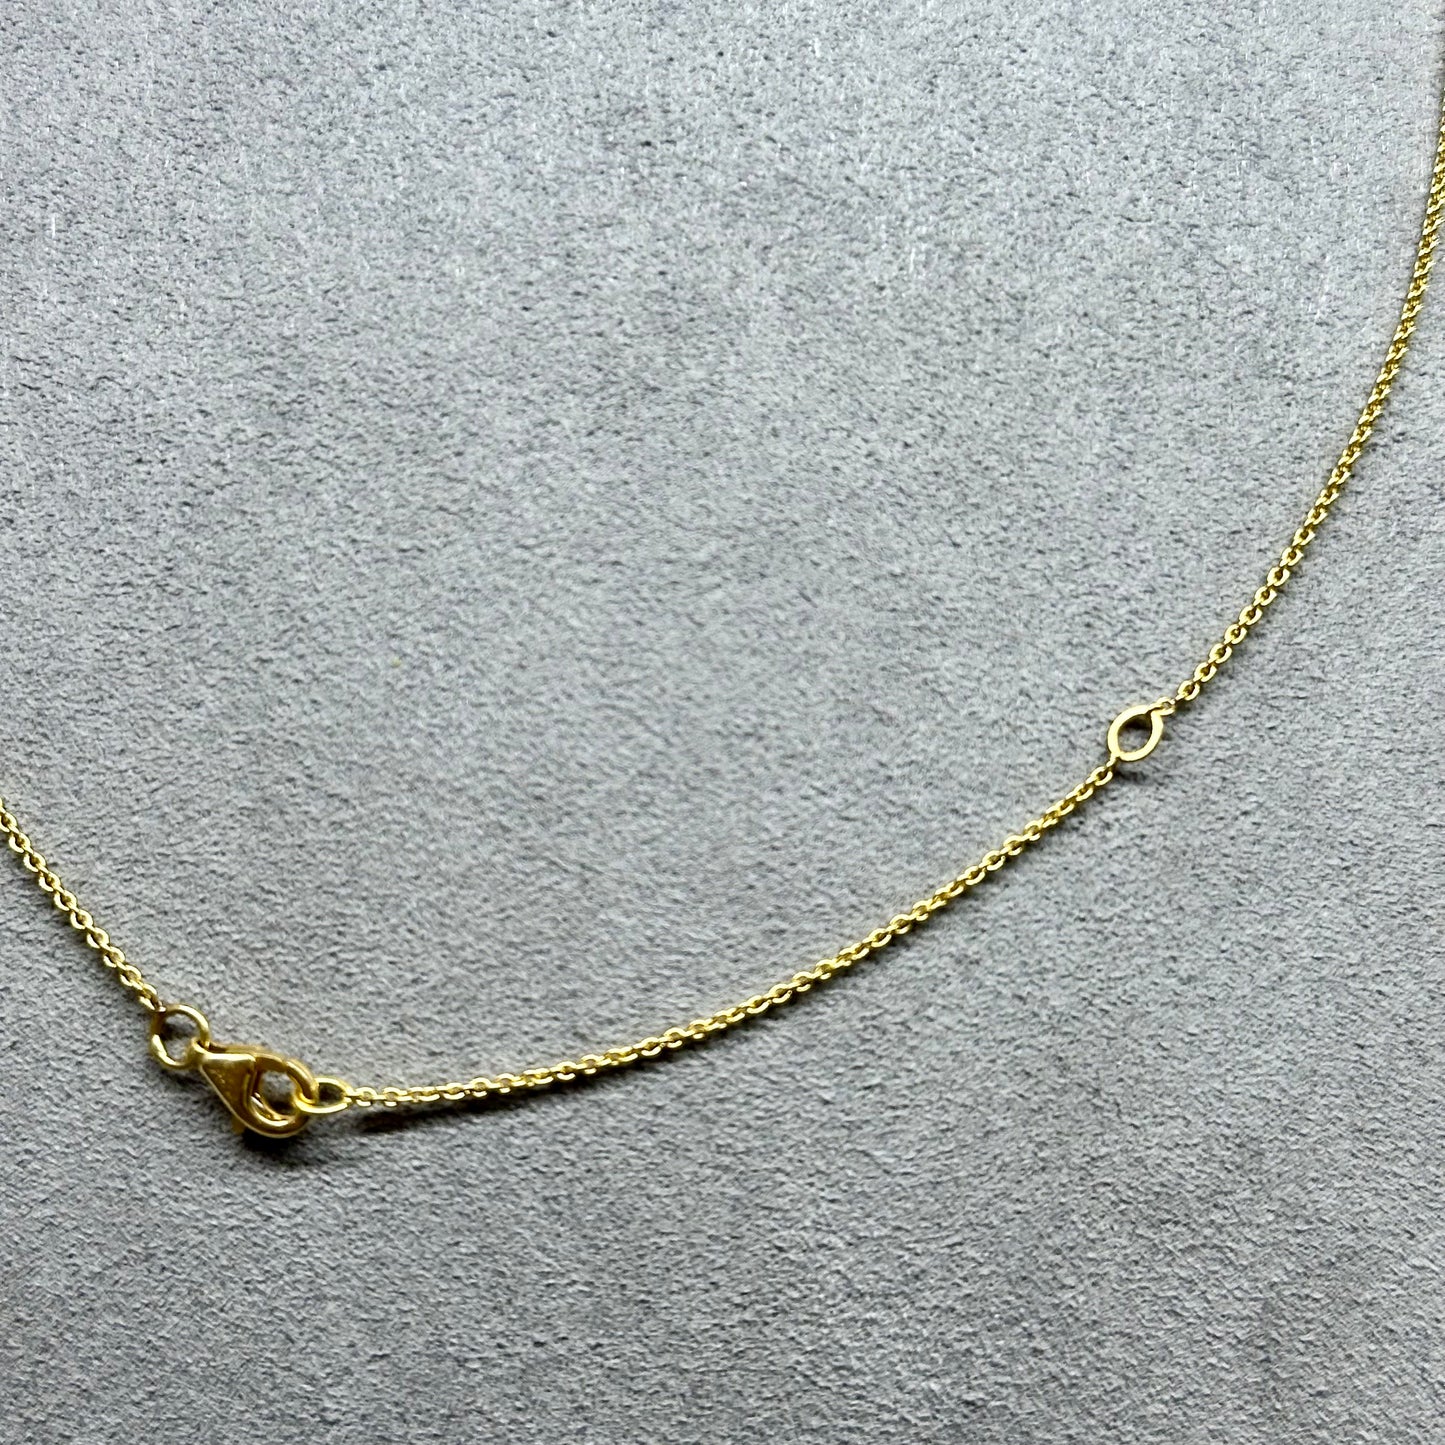 Karina - Natural Opal Necklace 18kt